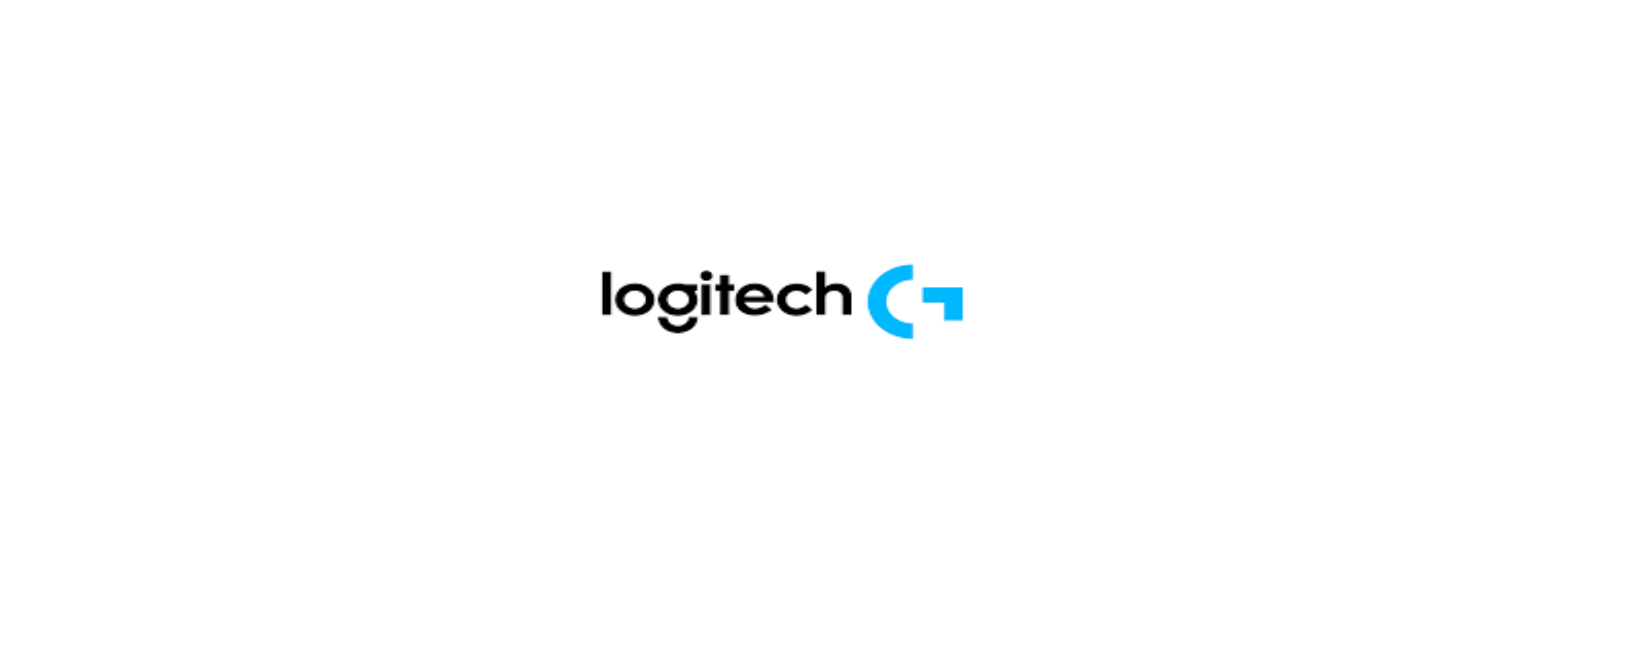 Logitech Discount Code 2022